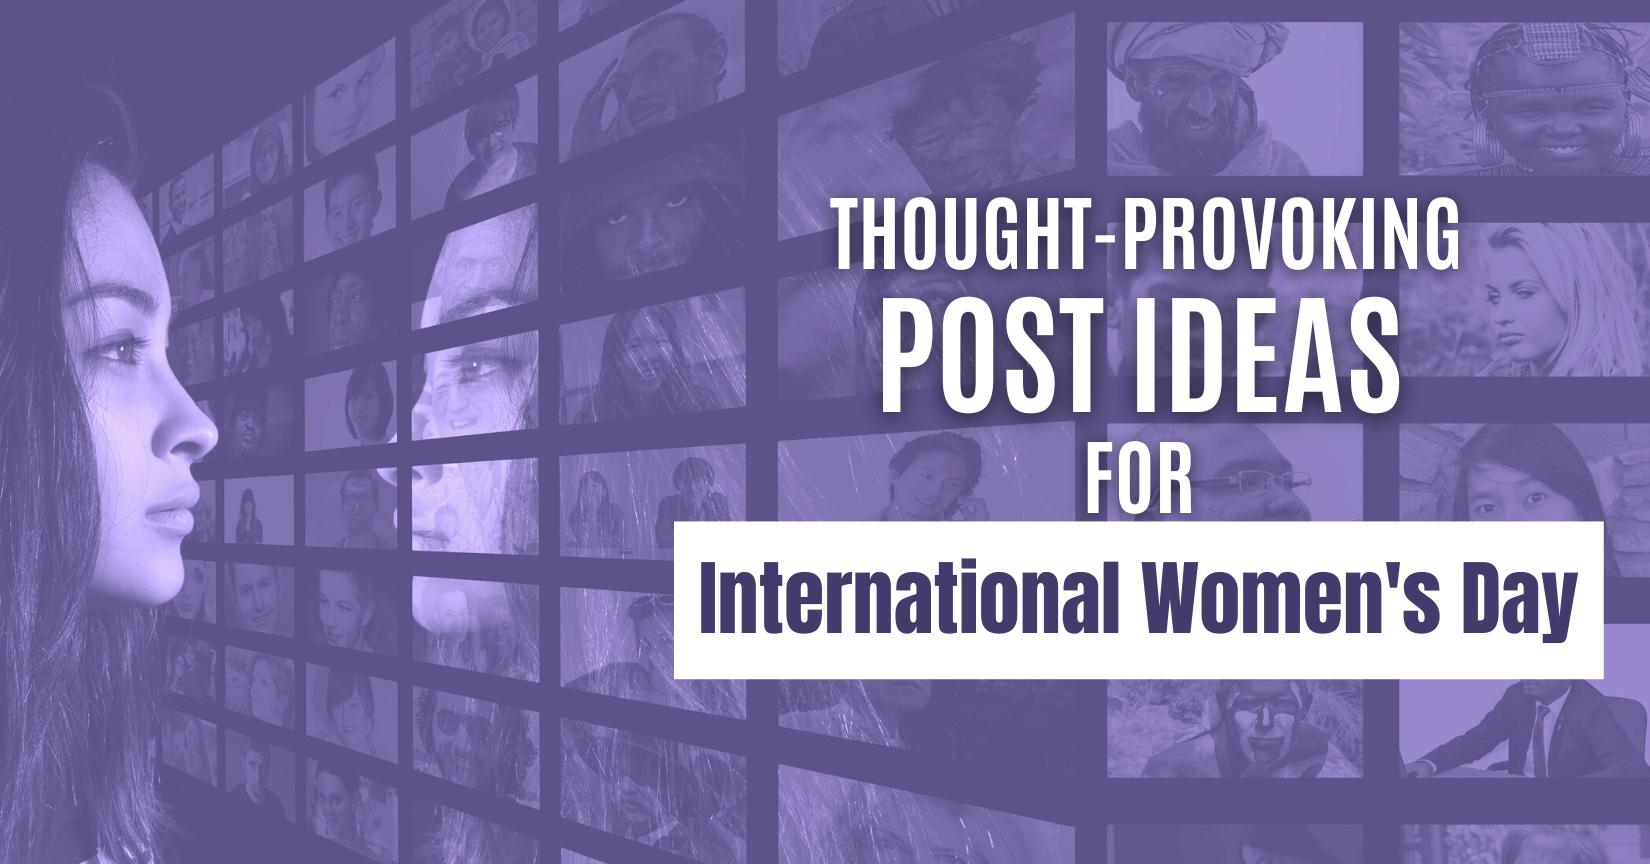 Social media post ideas for International Women's Day